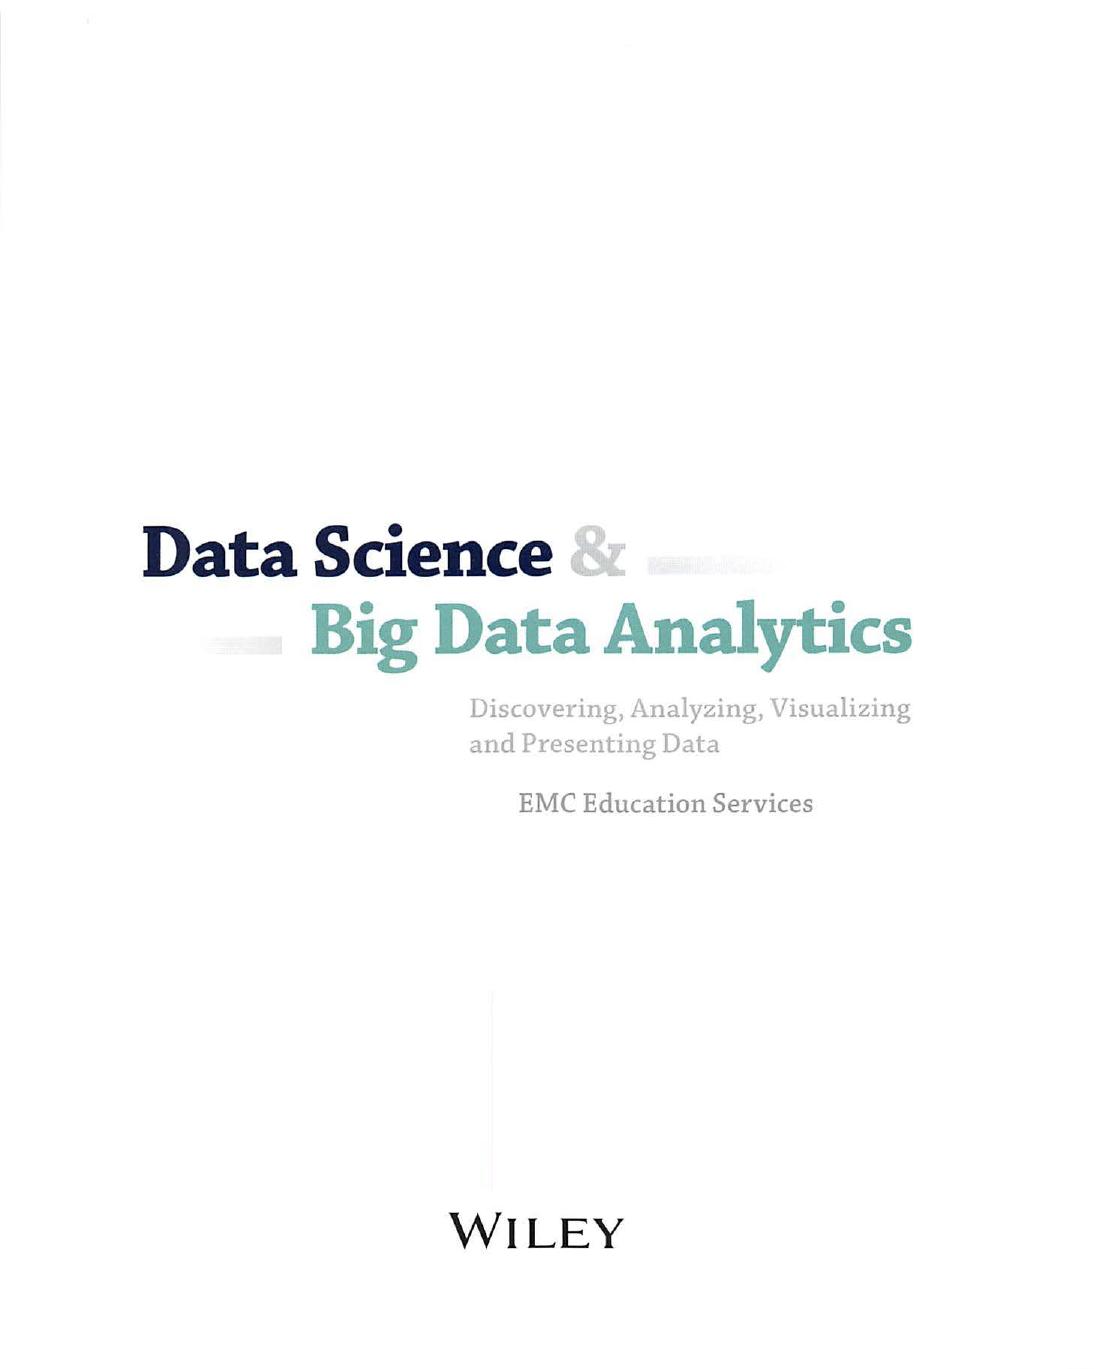 Data Science & Big Data Analytics 2015